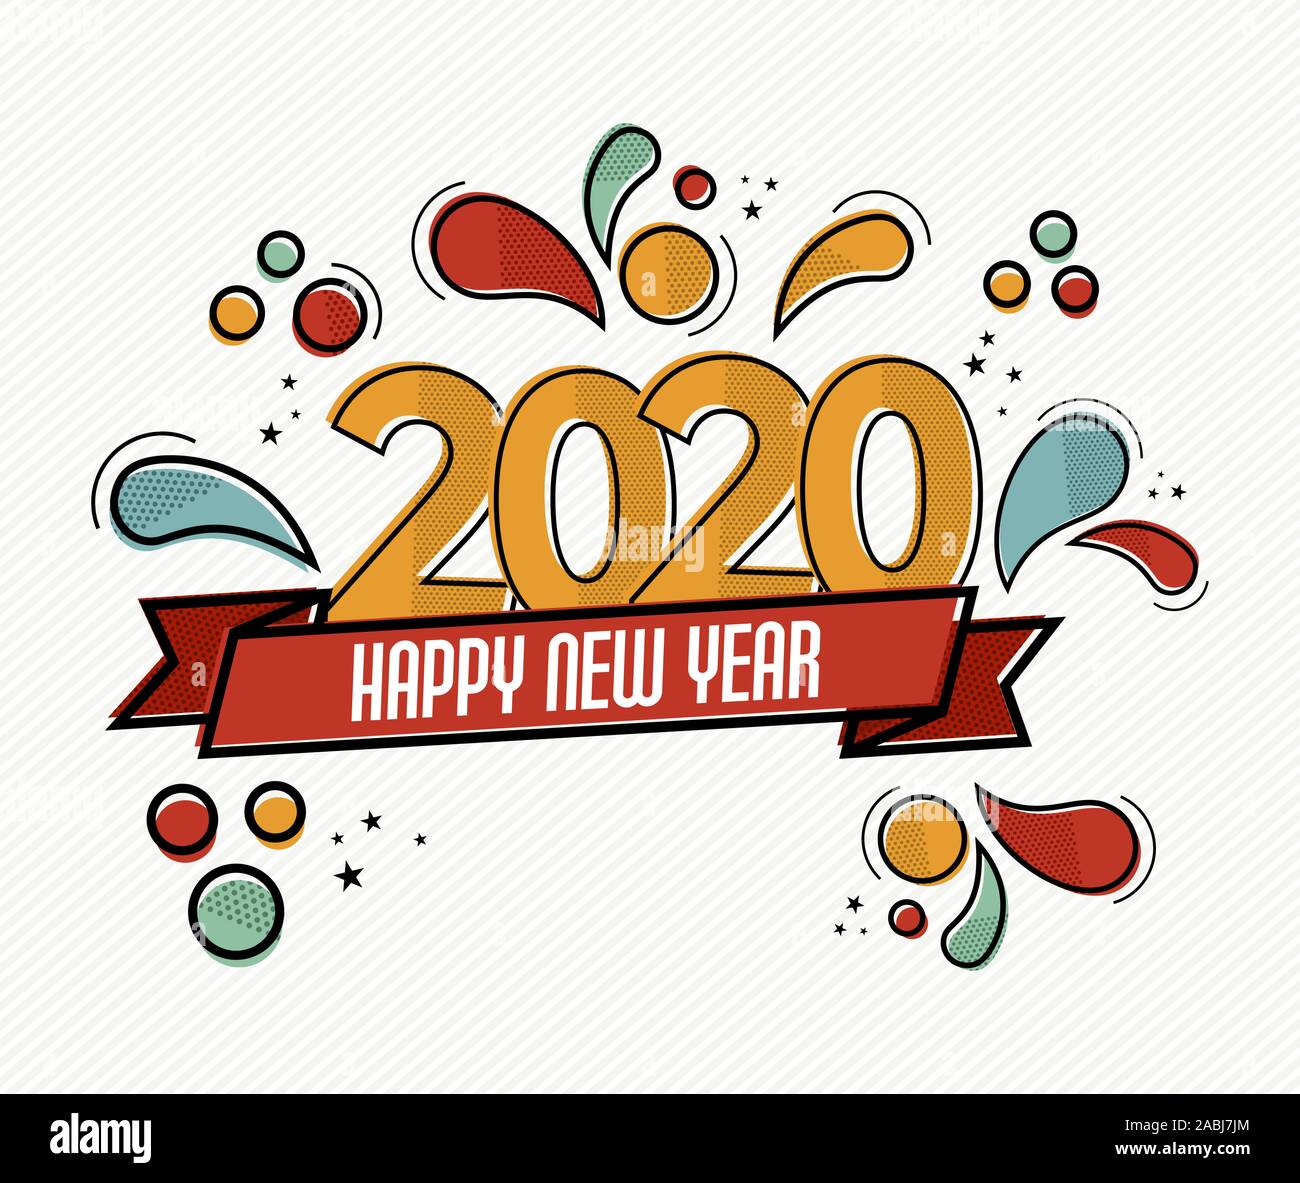 Frohes Neues Jahr 2020 pop art Grußkarte Abbildung von bunten Kalender Datum Anzahl mit lustigen Comic Stil eingerichtet. Stock Vektor